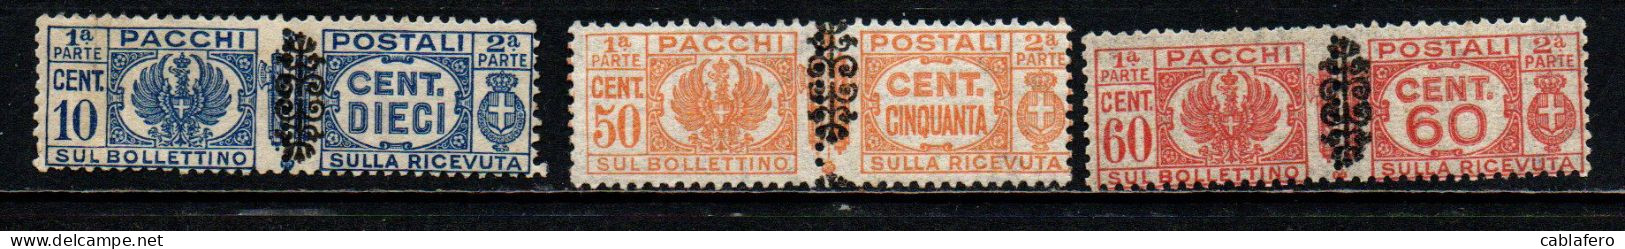 ITALIA LUOGOTENENZA - 1945 - STEMMA E CIFRA CON FREGIO NERO SUI FASCI - MNH - Postpaketten